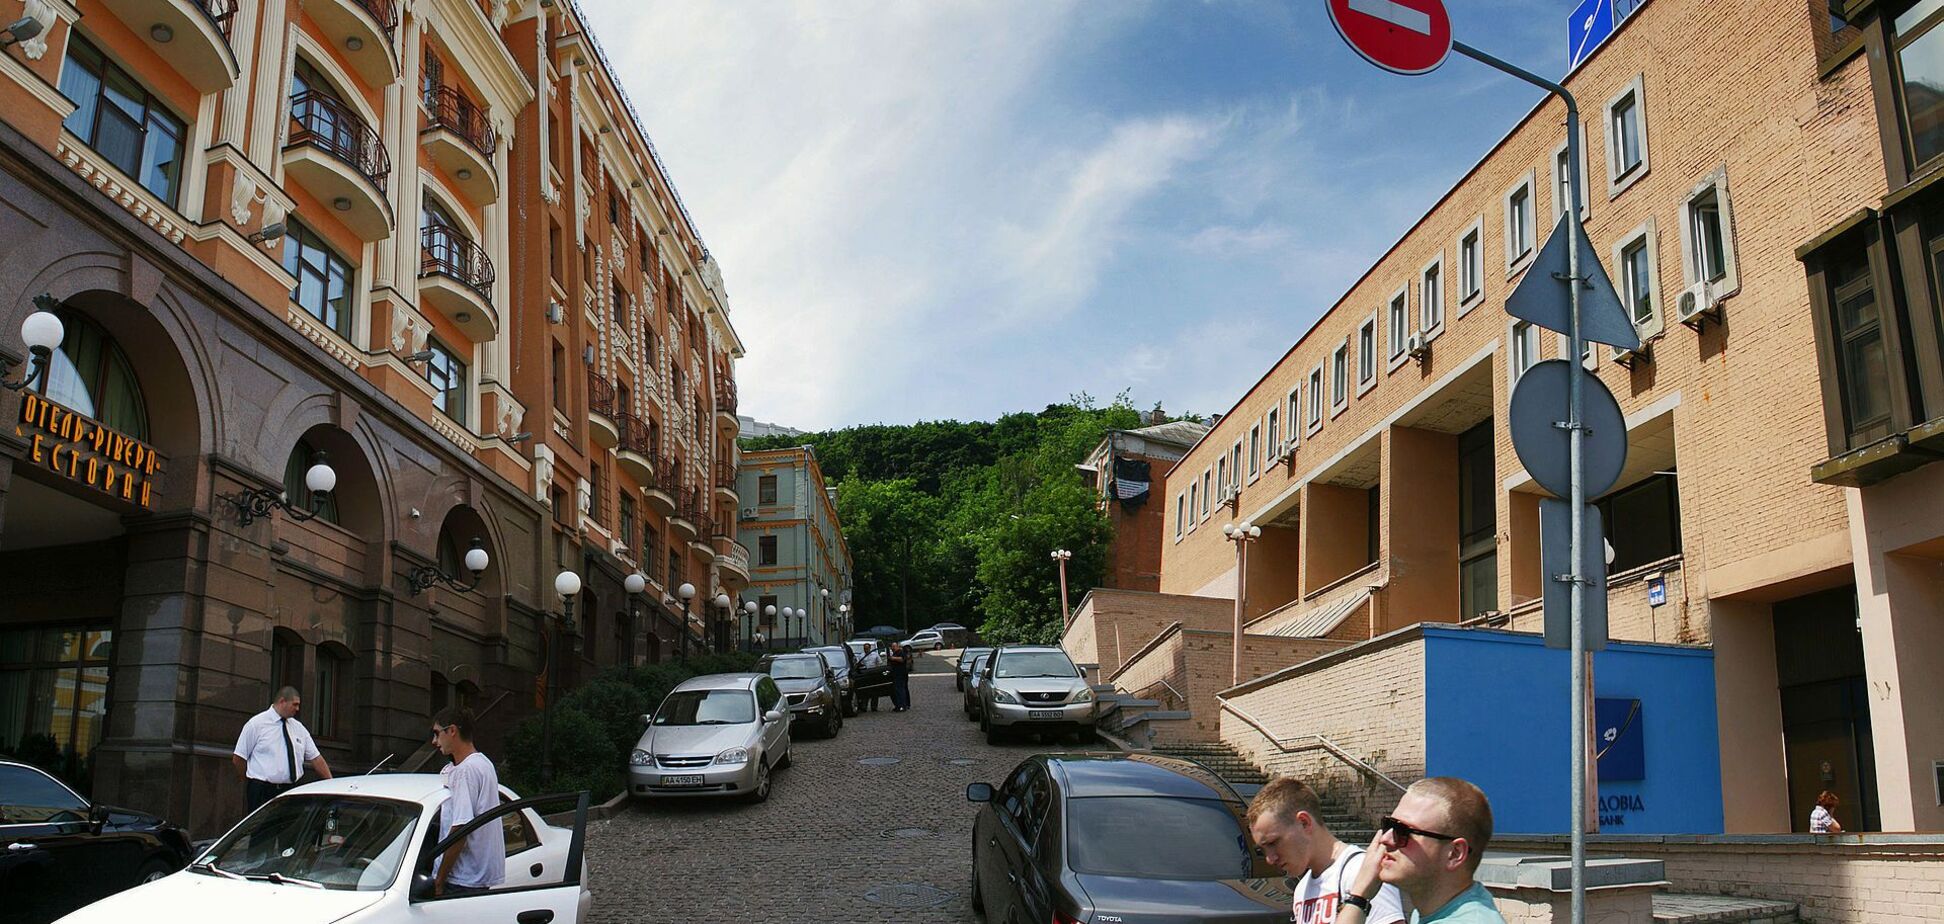 Боричев спуск является одной из старейших улиц столицы